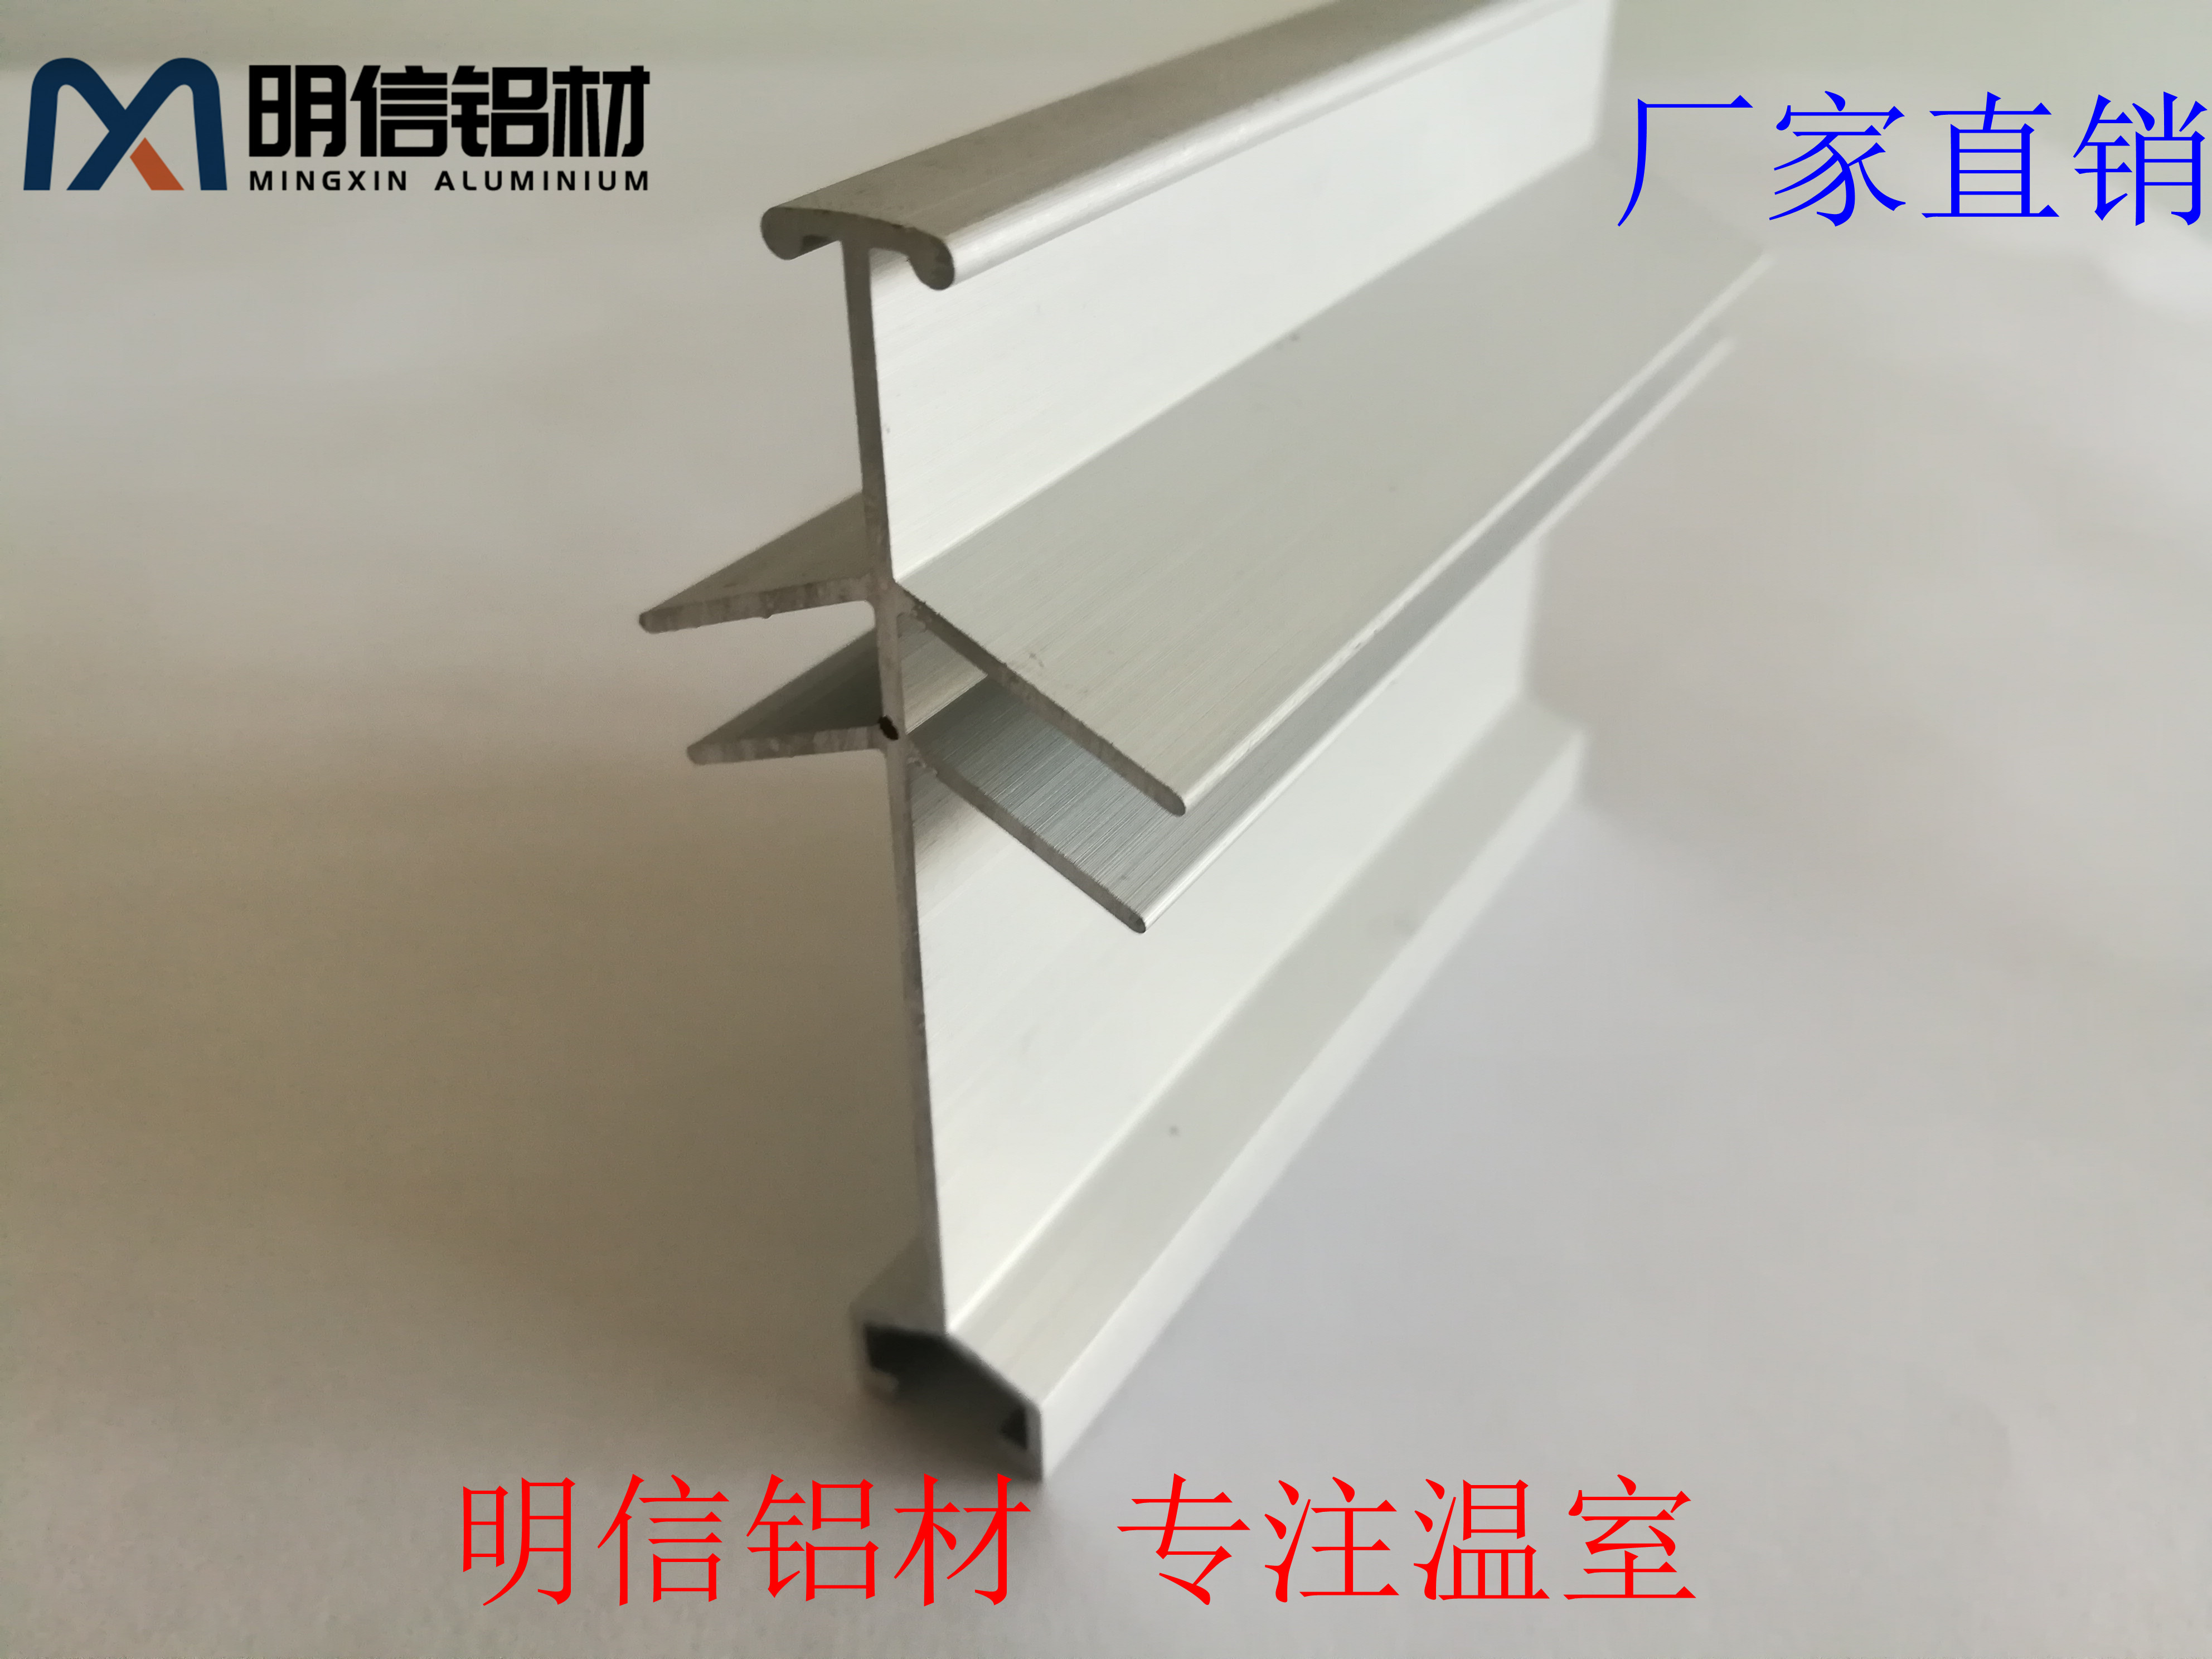 屋脊-顶部玻璃温室铝材/明信温室铝材